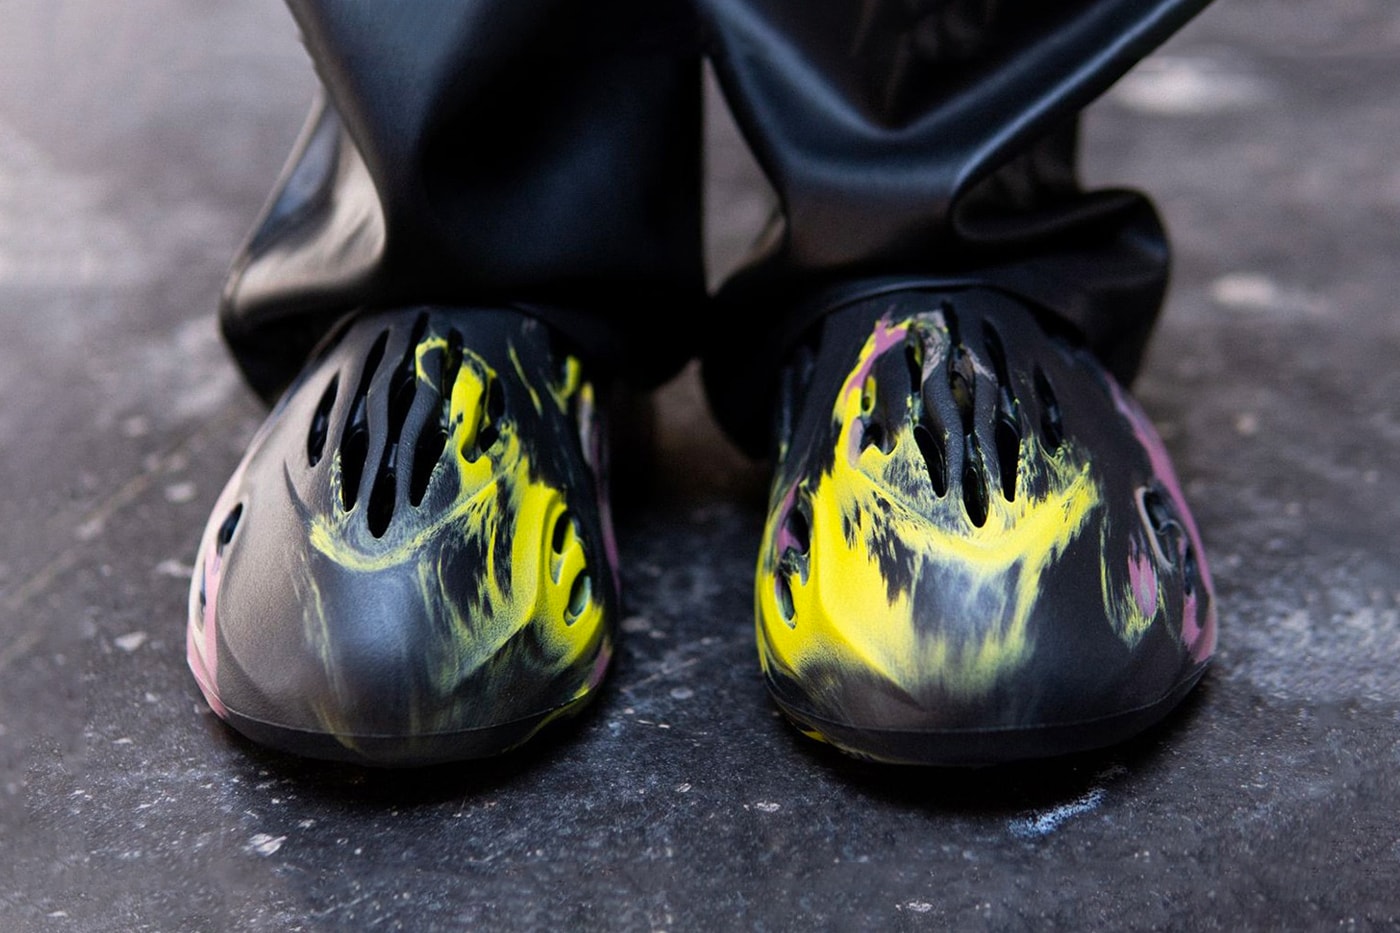 Yeezy Foam Runner On Feet: Styling The Yeezy Foam Runner